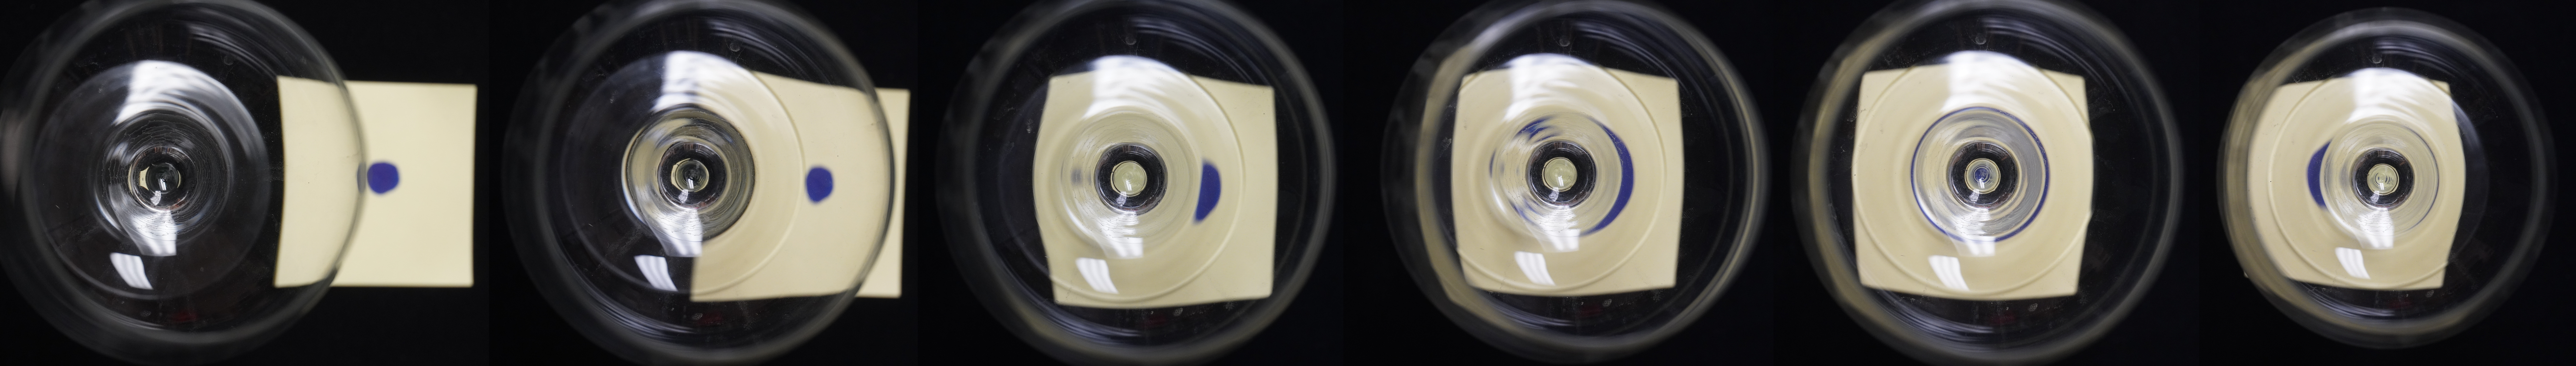 Wine Glass Gravitational Lensing demonstration